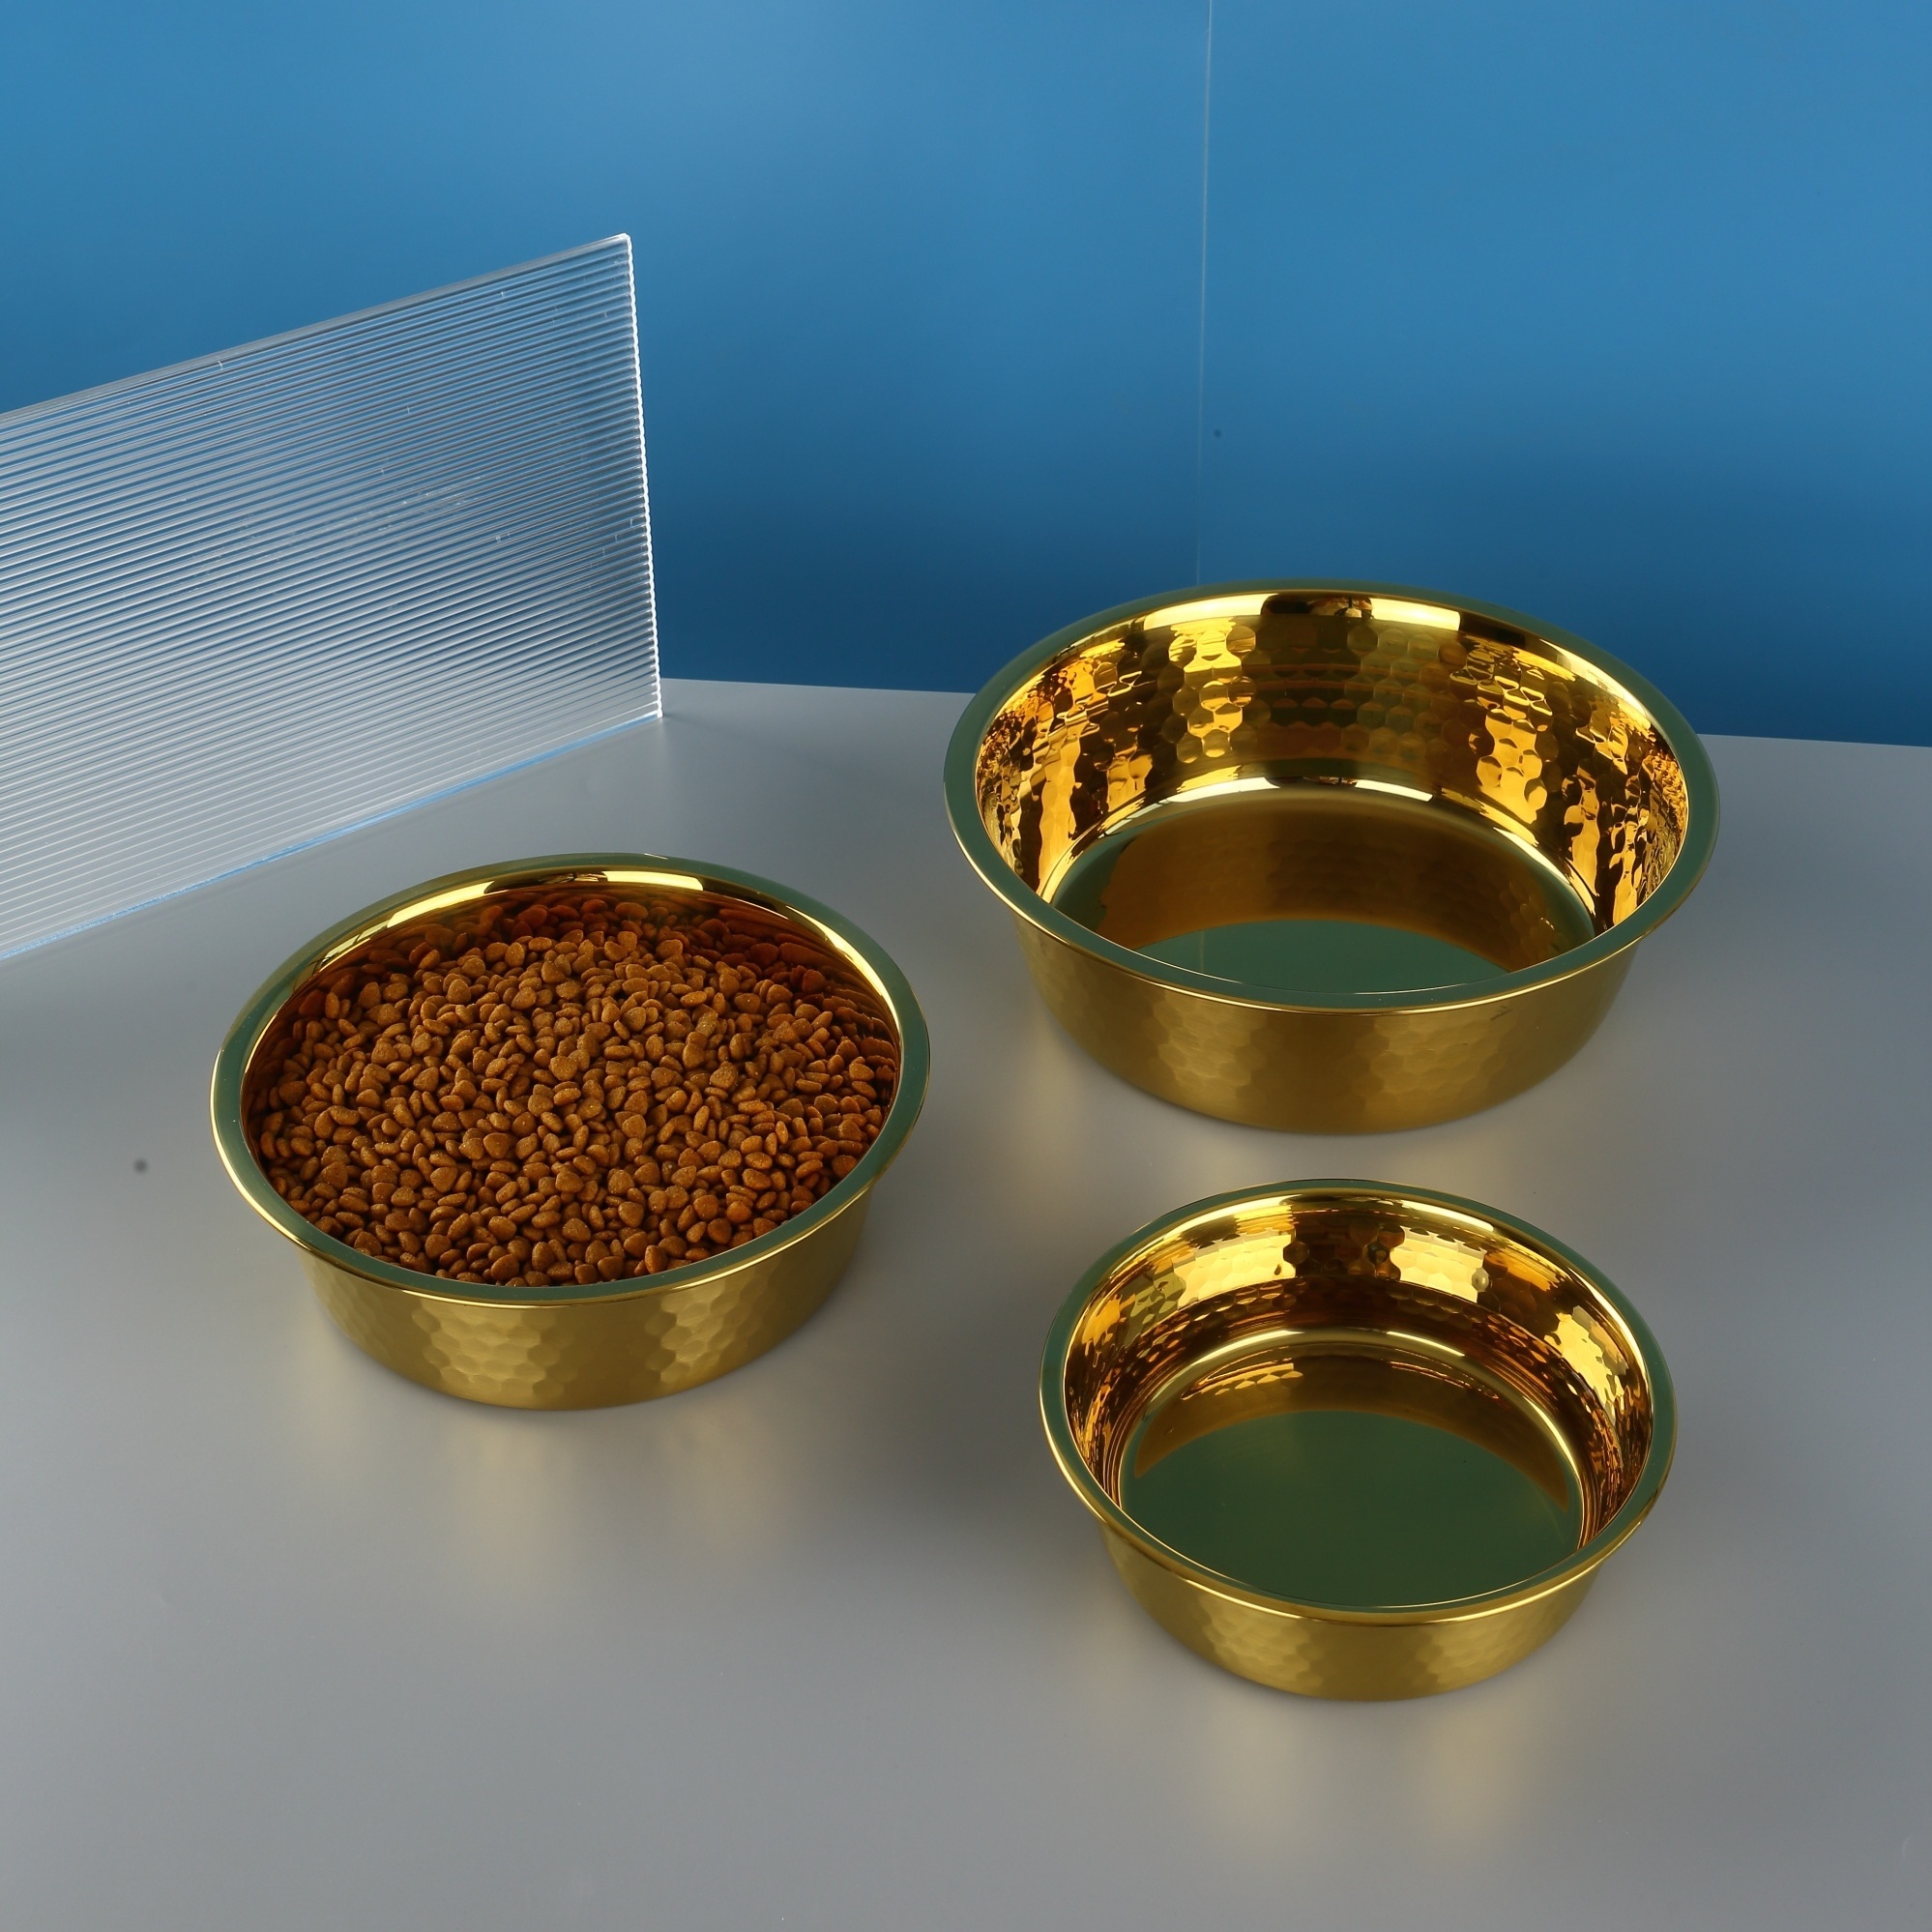 Small Gold Serving Bowls, Gold Dog food bowls